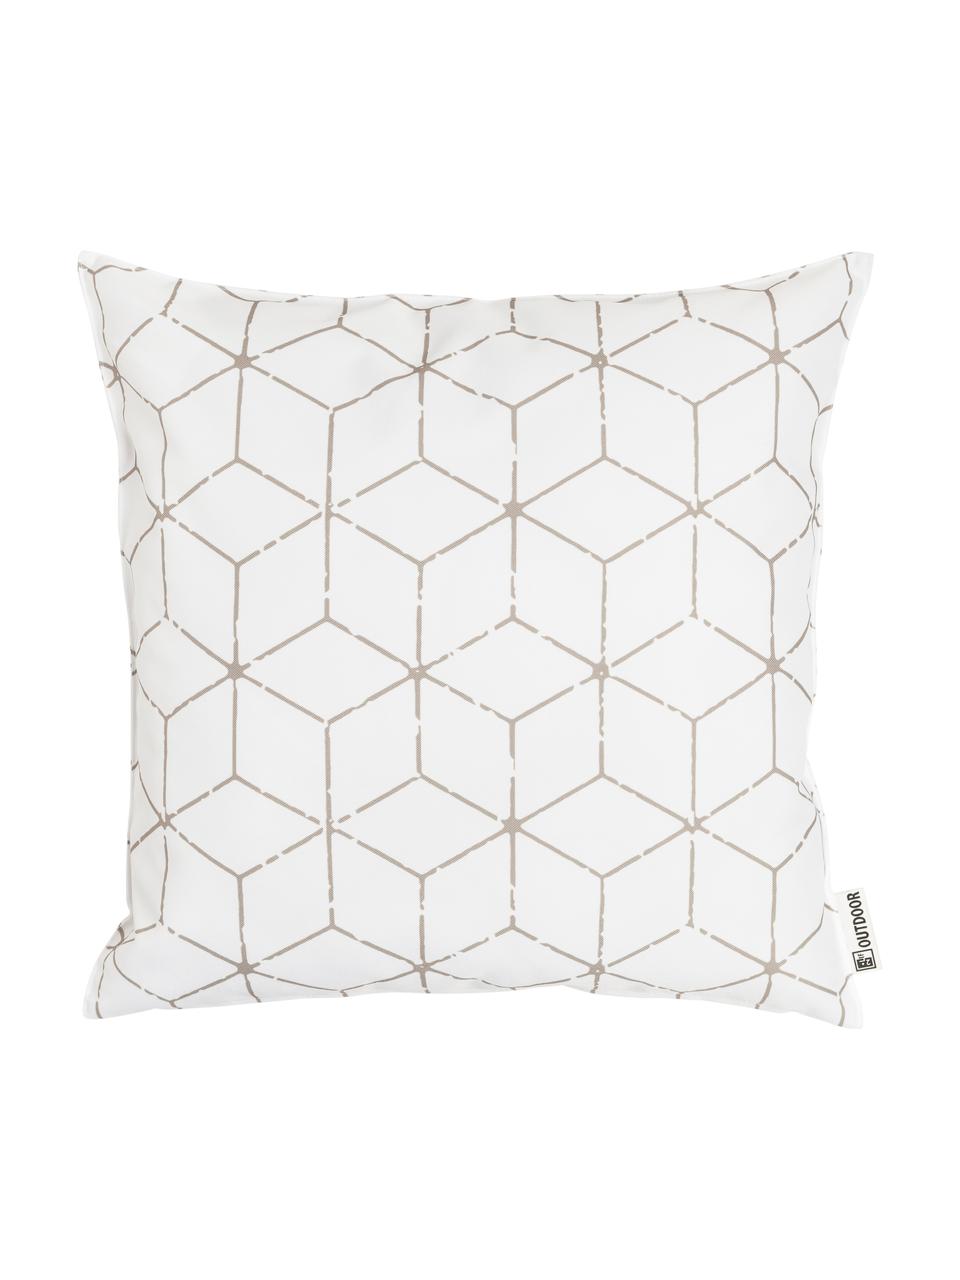 Outdoor kussen Cube met grafisch patroon in beige/wit, met vulling, 100% polyester, Wit, beige, 47 x 47 cm